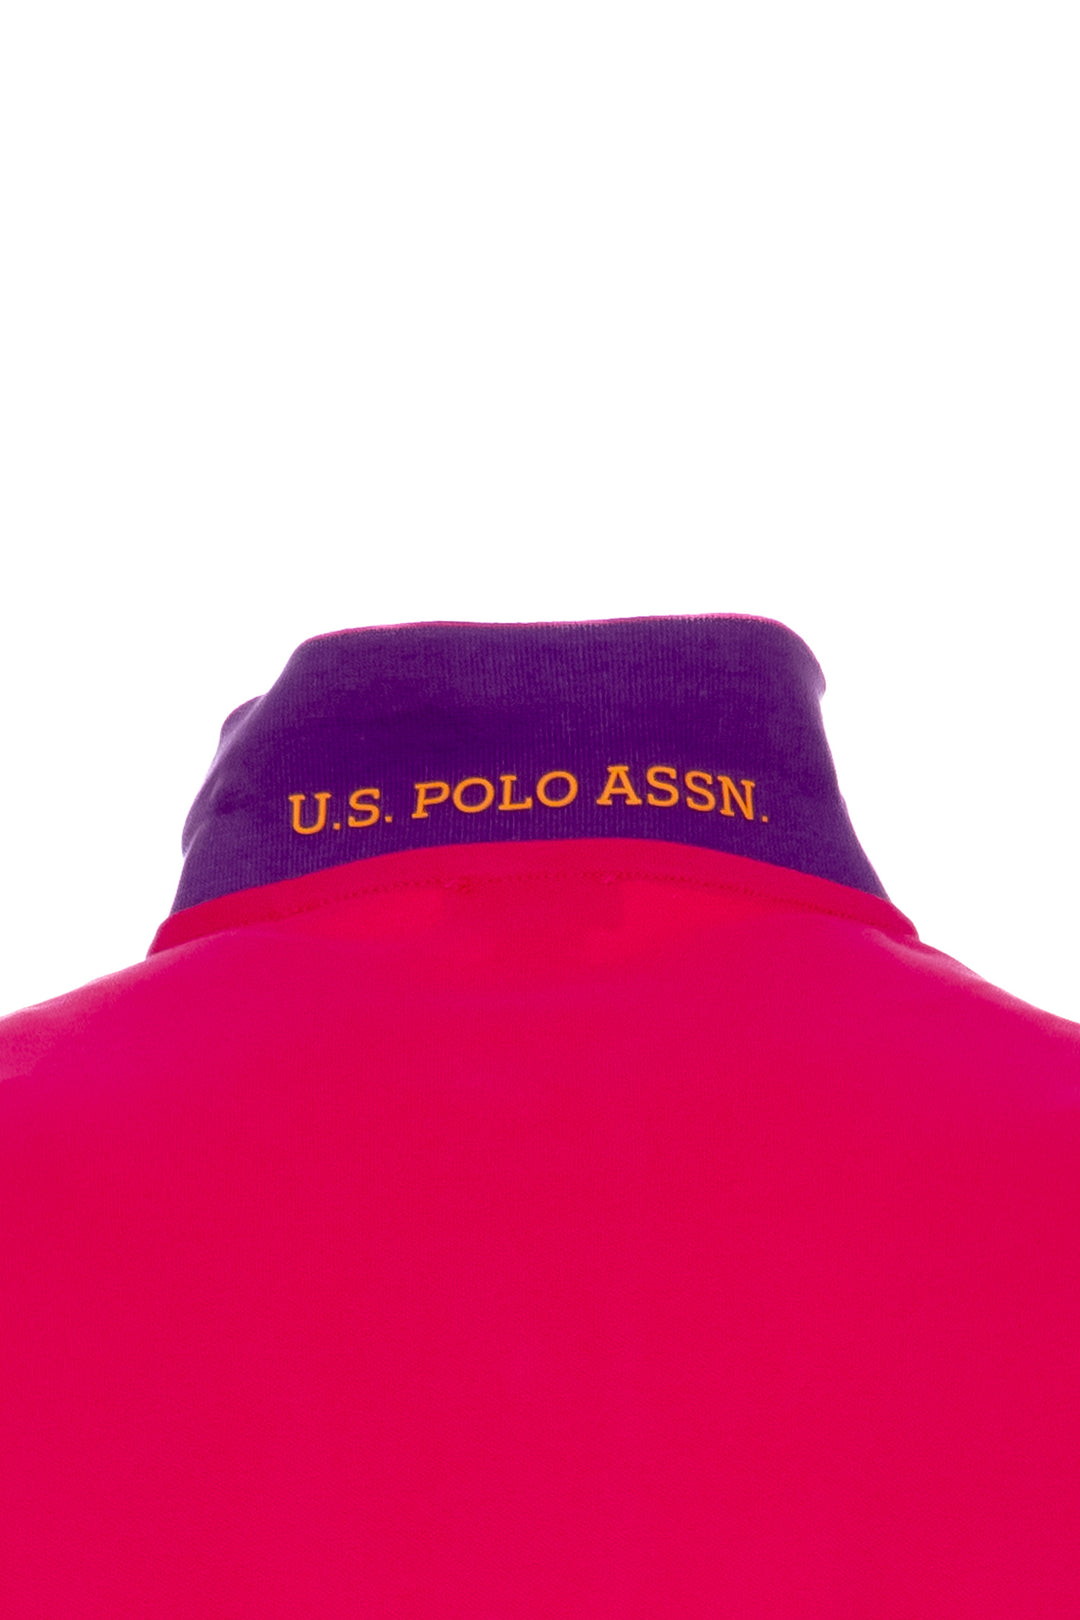 U.S. POLO ASSN. Polo fucsia in cotone stretch con logo ricamato e maniche multicolor - Mancinelli 1954